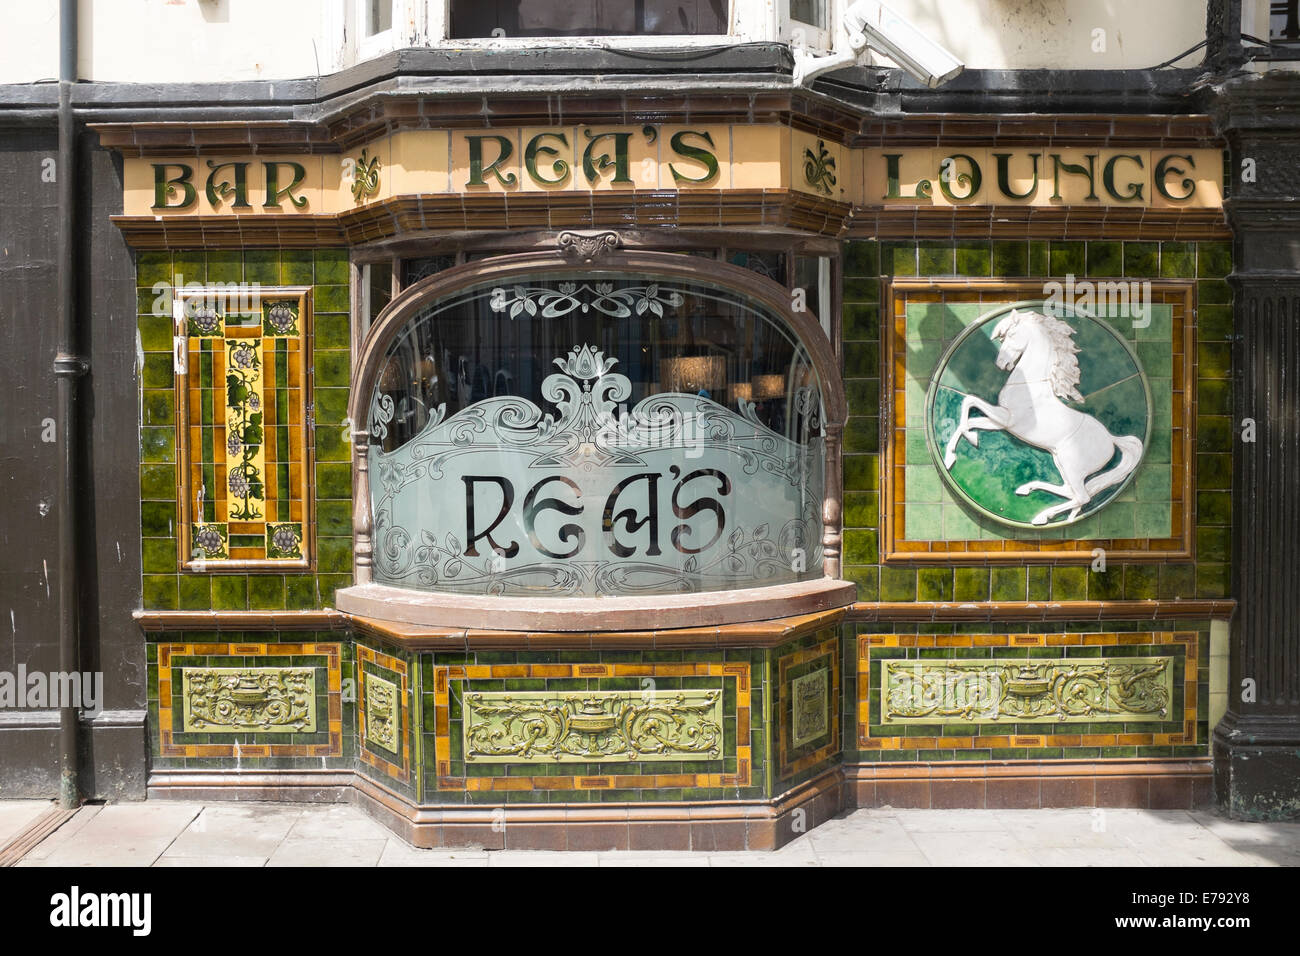 Bar Reas Rea's Lounge piastrelle ornate Glassf pannellizzazione Foto Stock